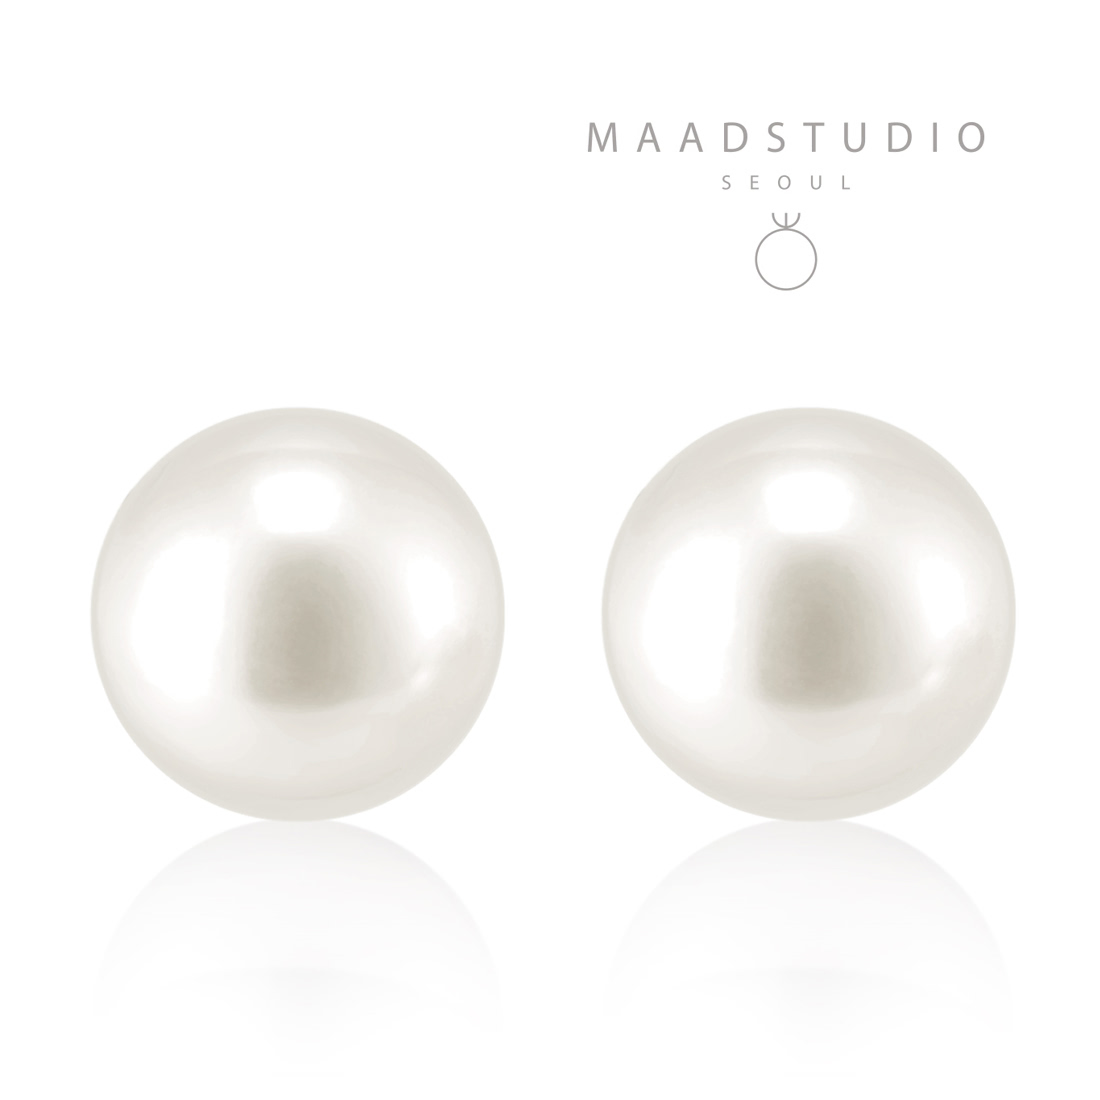 Sphere Pearl earring (L) 14k gold